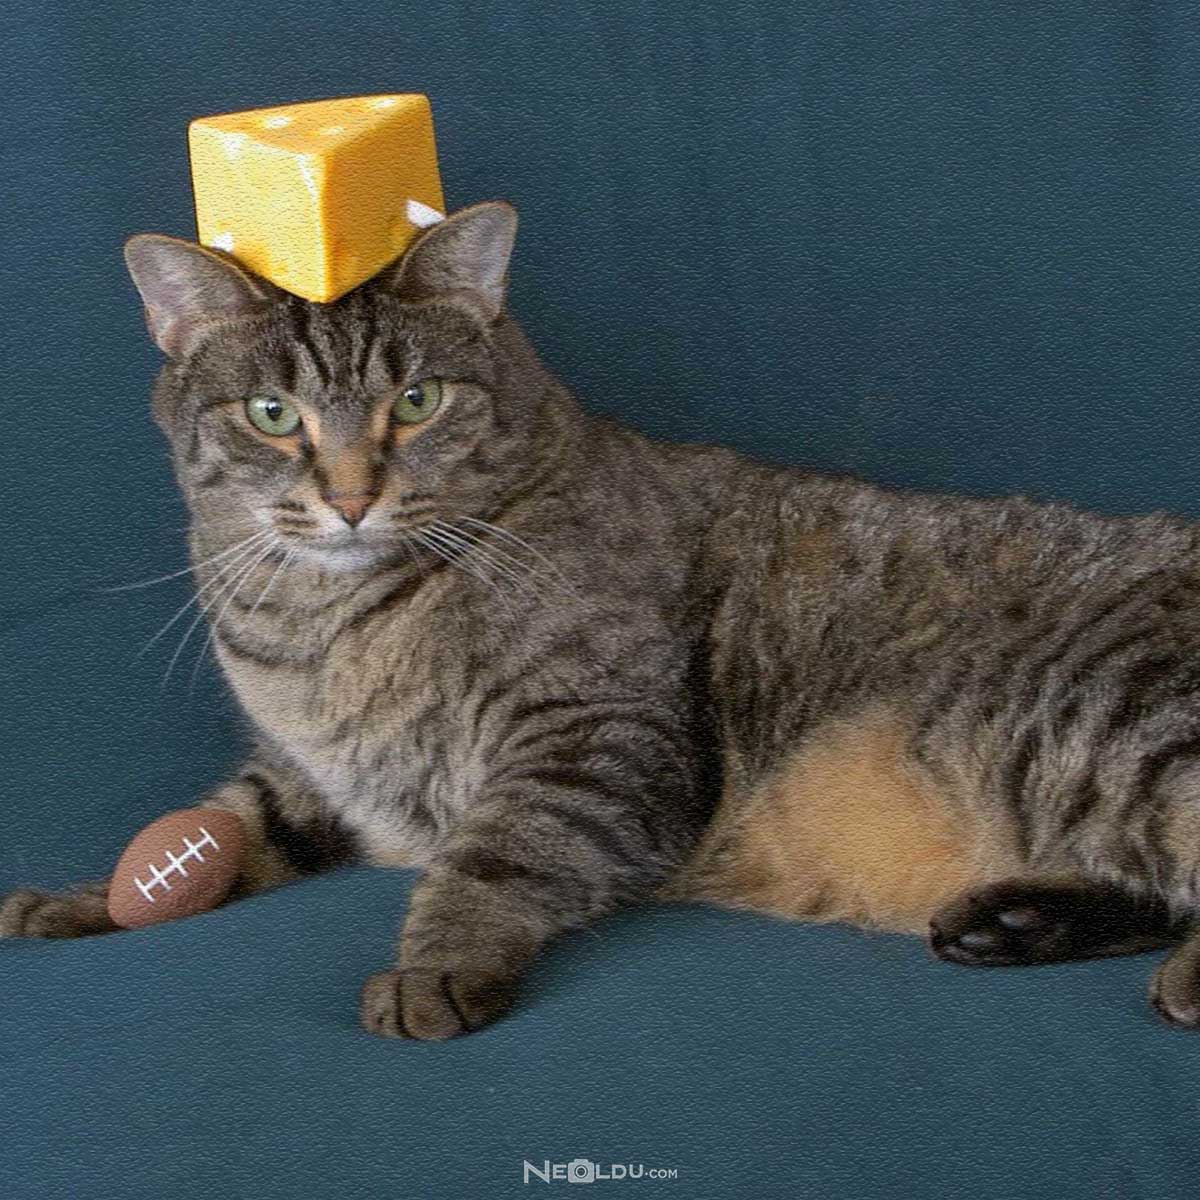 Kediler peynir yer mi